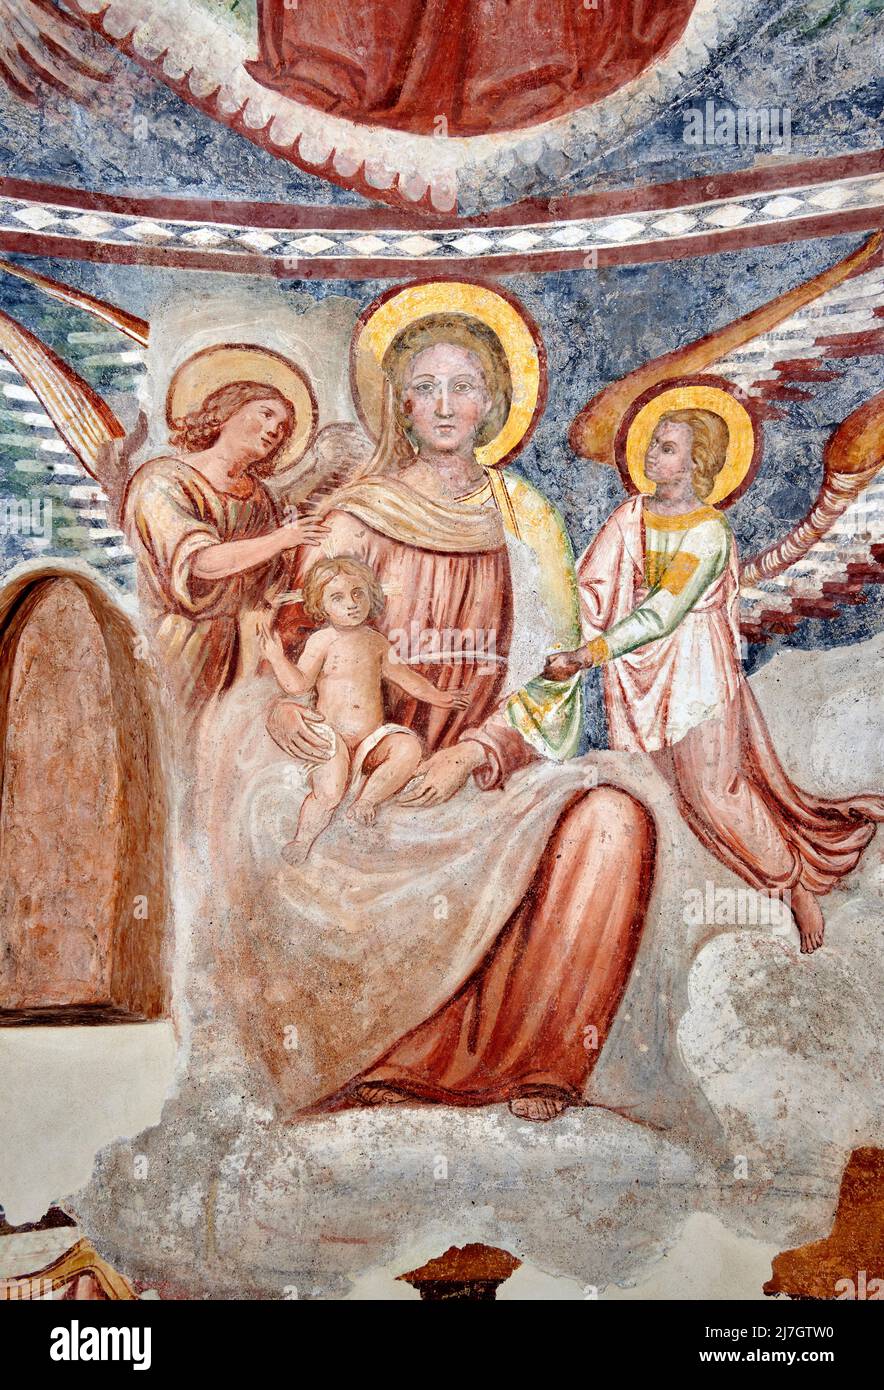 La Vergine col Bambino in trono con angeli - affresco - pittore lombardo del XIII/XIV secolo - Negrone di Scanzorosciate (BG,italia,chiesa di S. Pa Stockfoto